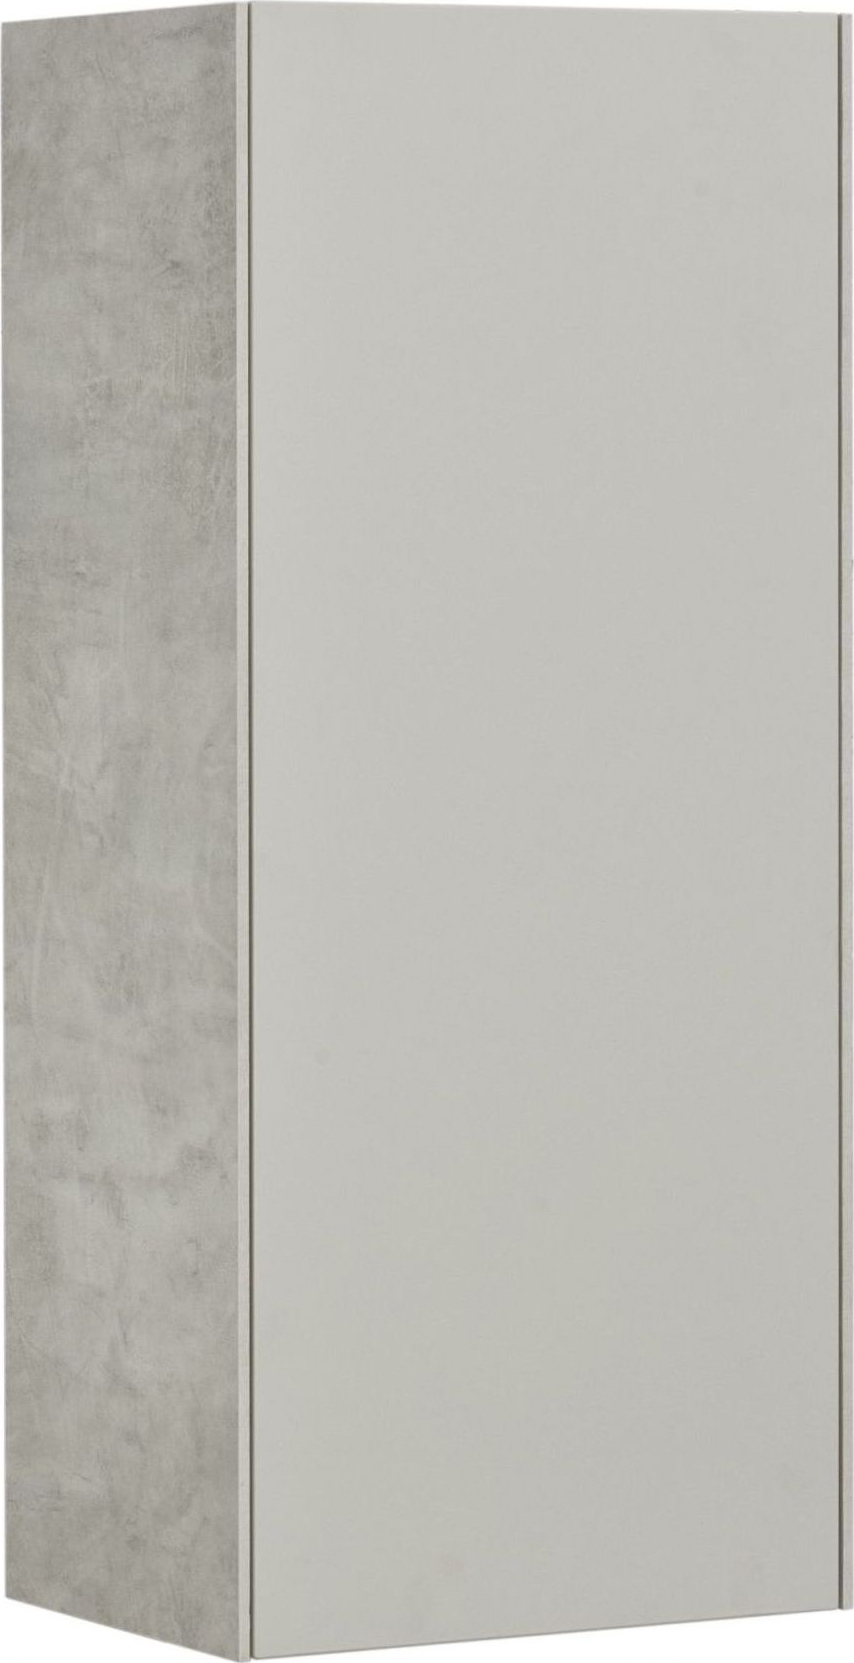 Шкаф-пенал Акватон Сохо 35x80 см серый 1A258403AJ9A0 правый